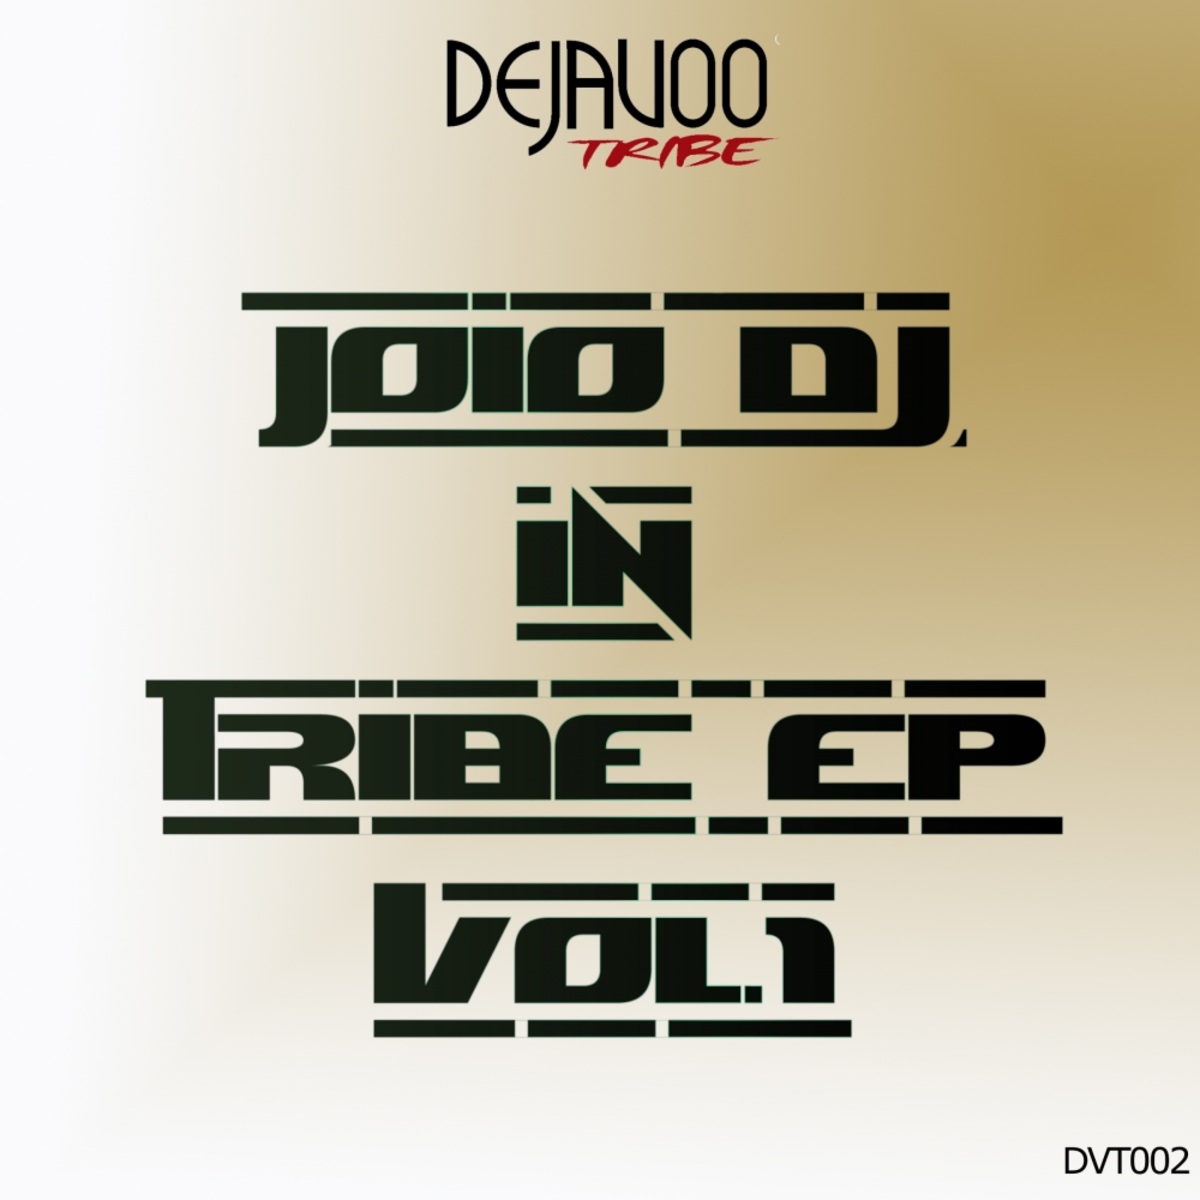 JoioDJ - Tribe EP, Vol. 1 / Dejavoo Tribe Records